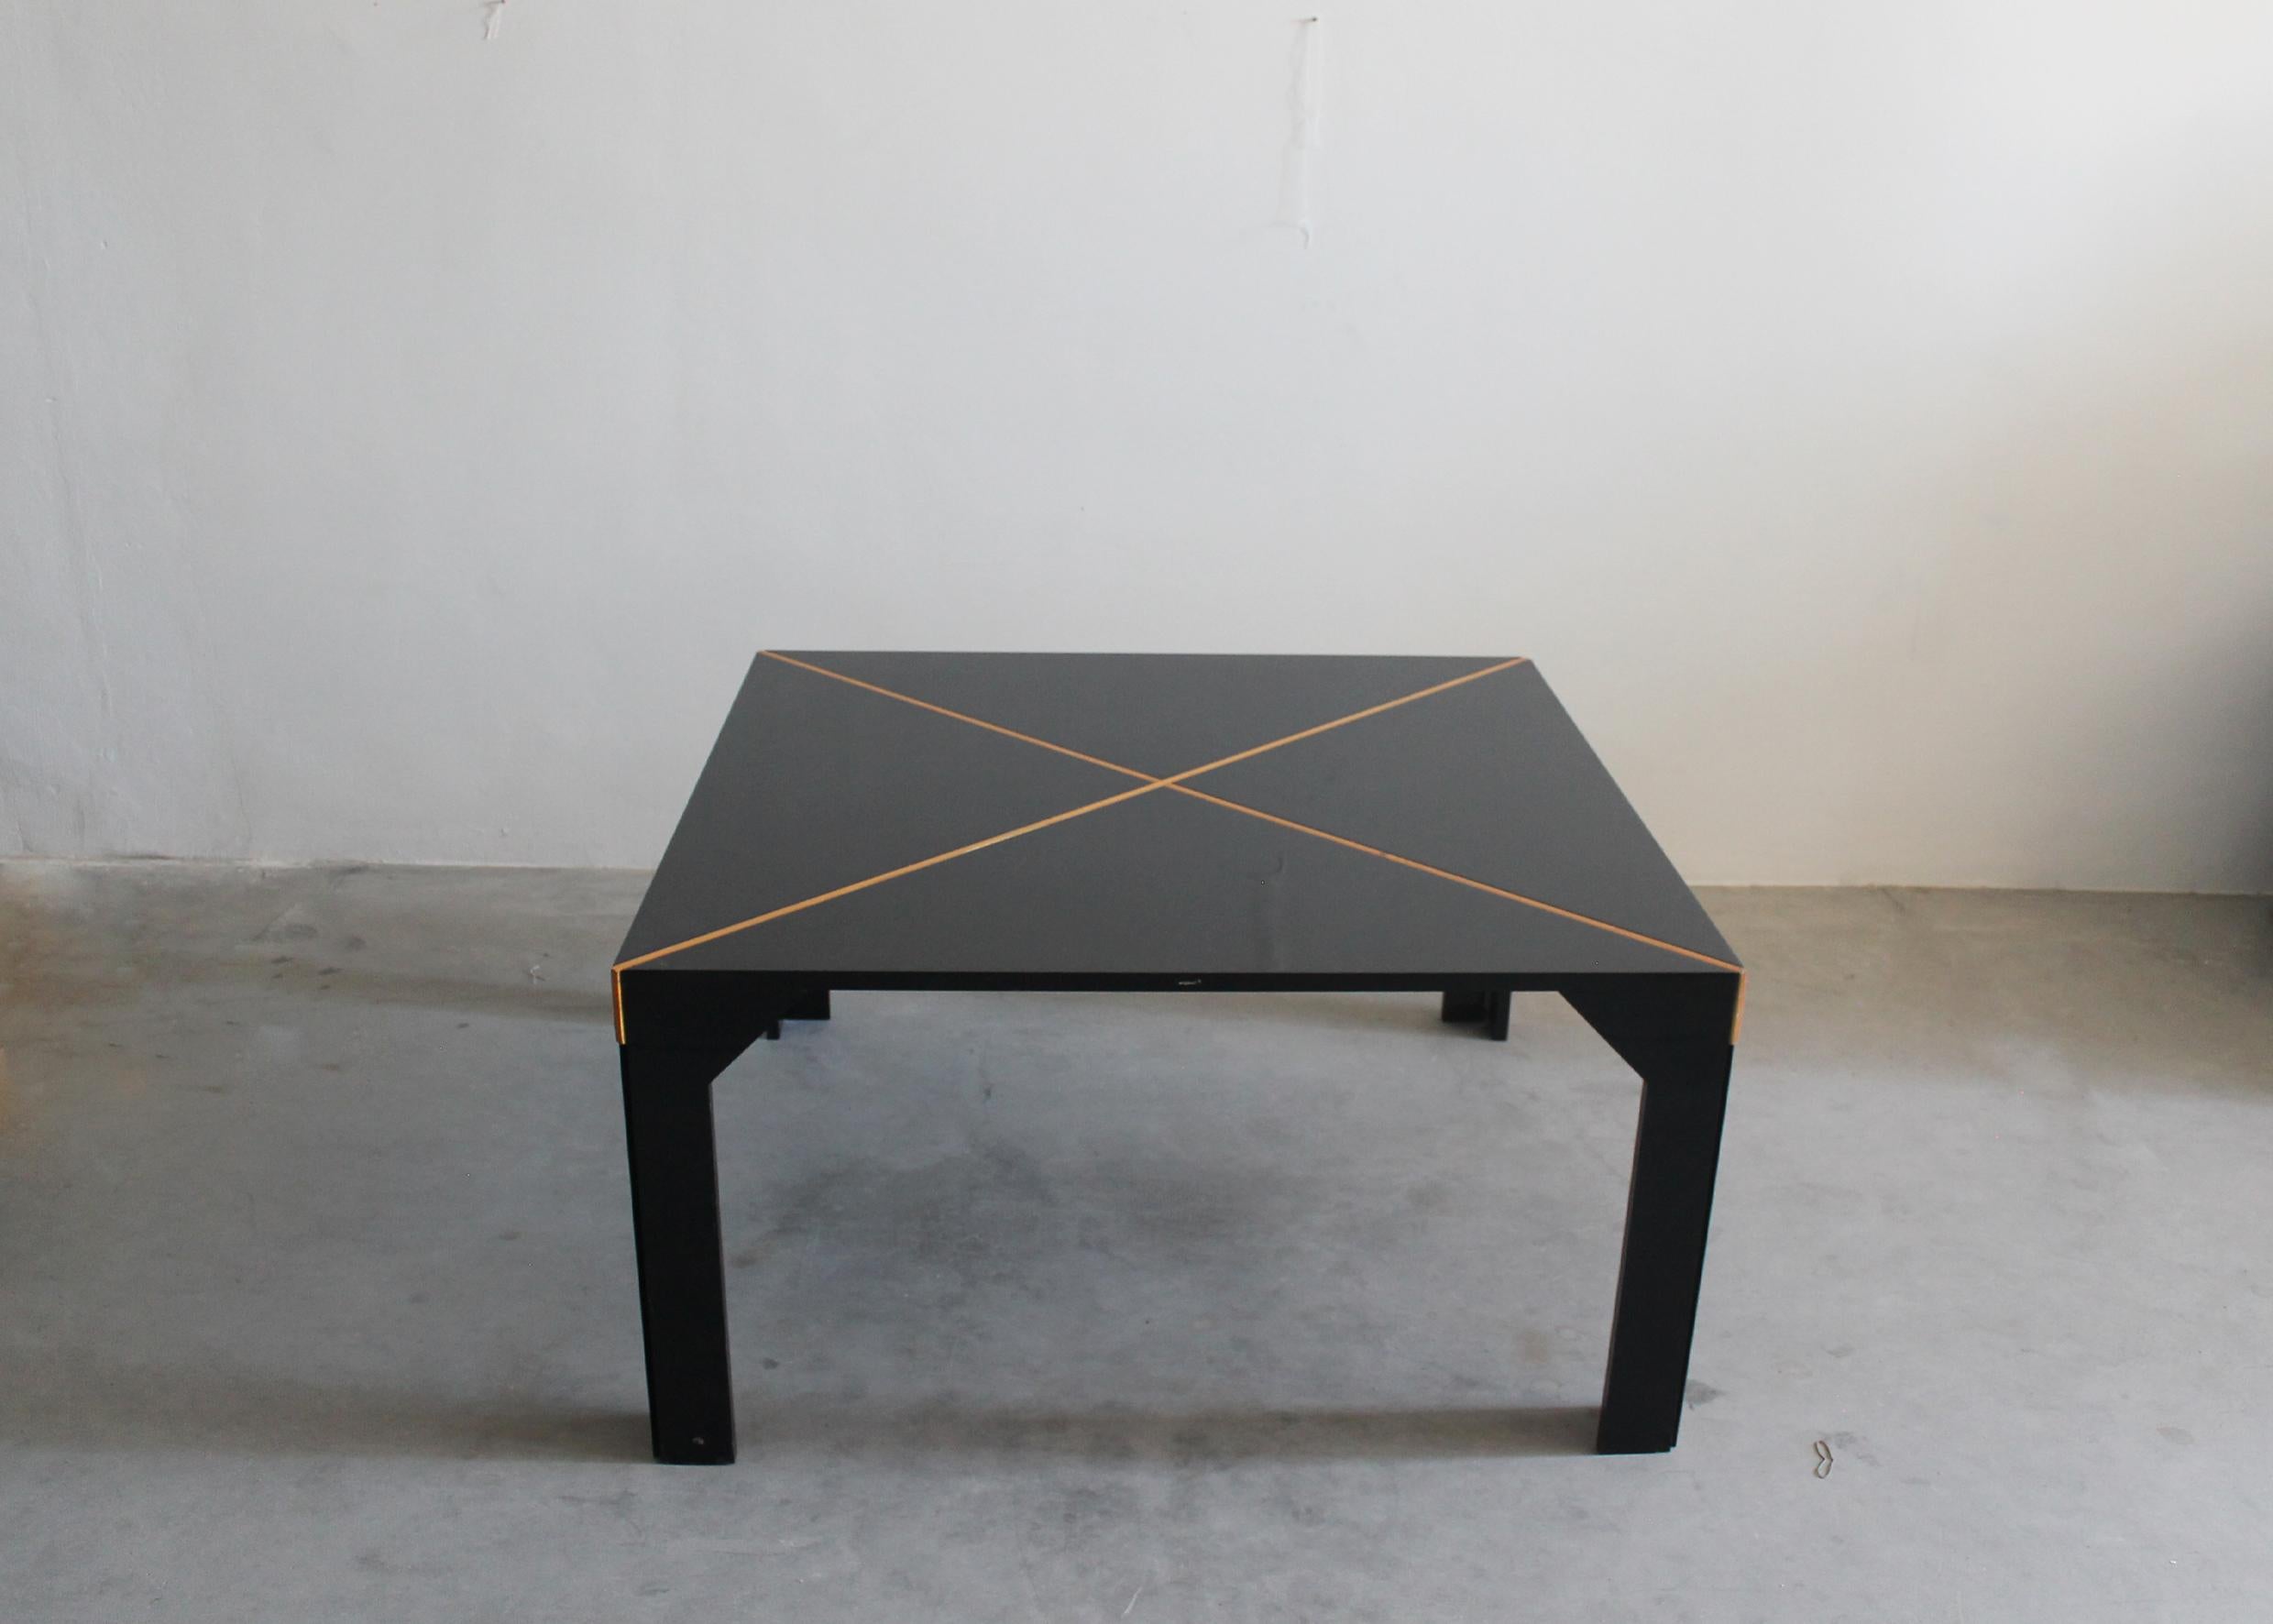 Quadratischer Tisch Modell Tema mit Struktur aus schwarz lackiertem Holz und diagonalen Einsätzen aus natürlichem Fichtenholz auf der Platte.
Entworfen von Vico Magistretti und hergestellt von B&B, 1973, Italien. 

Licterature: Un'industria per